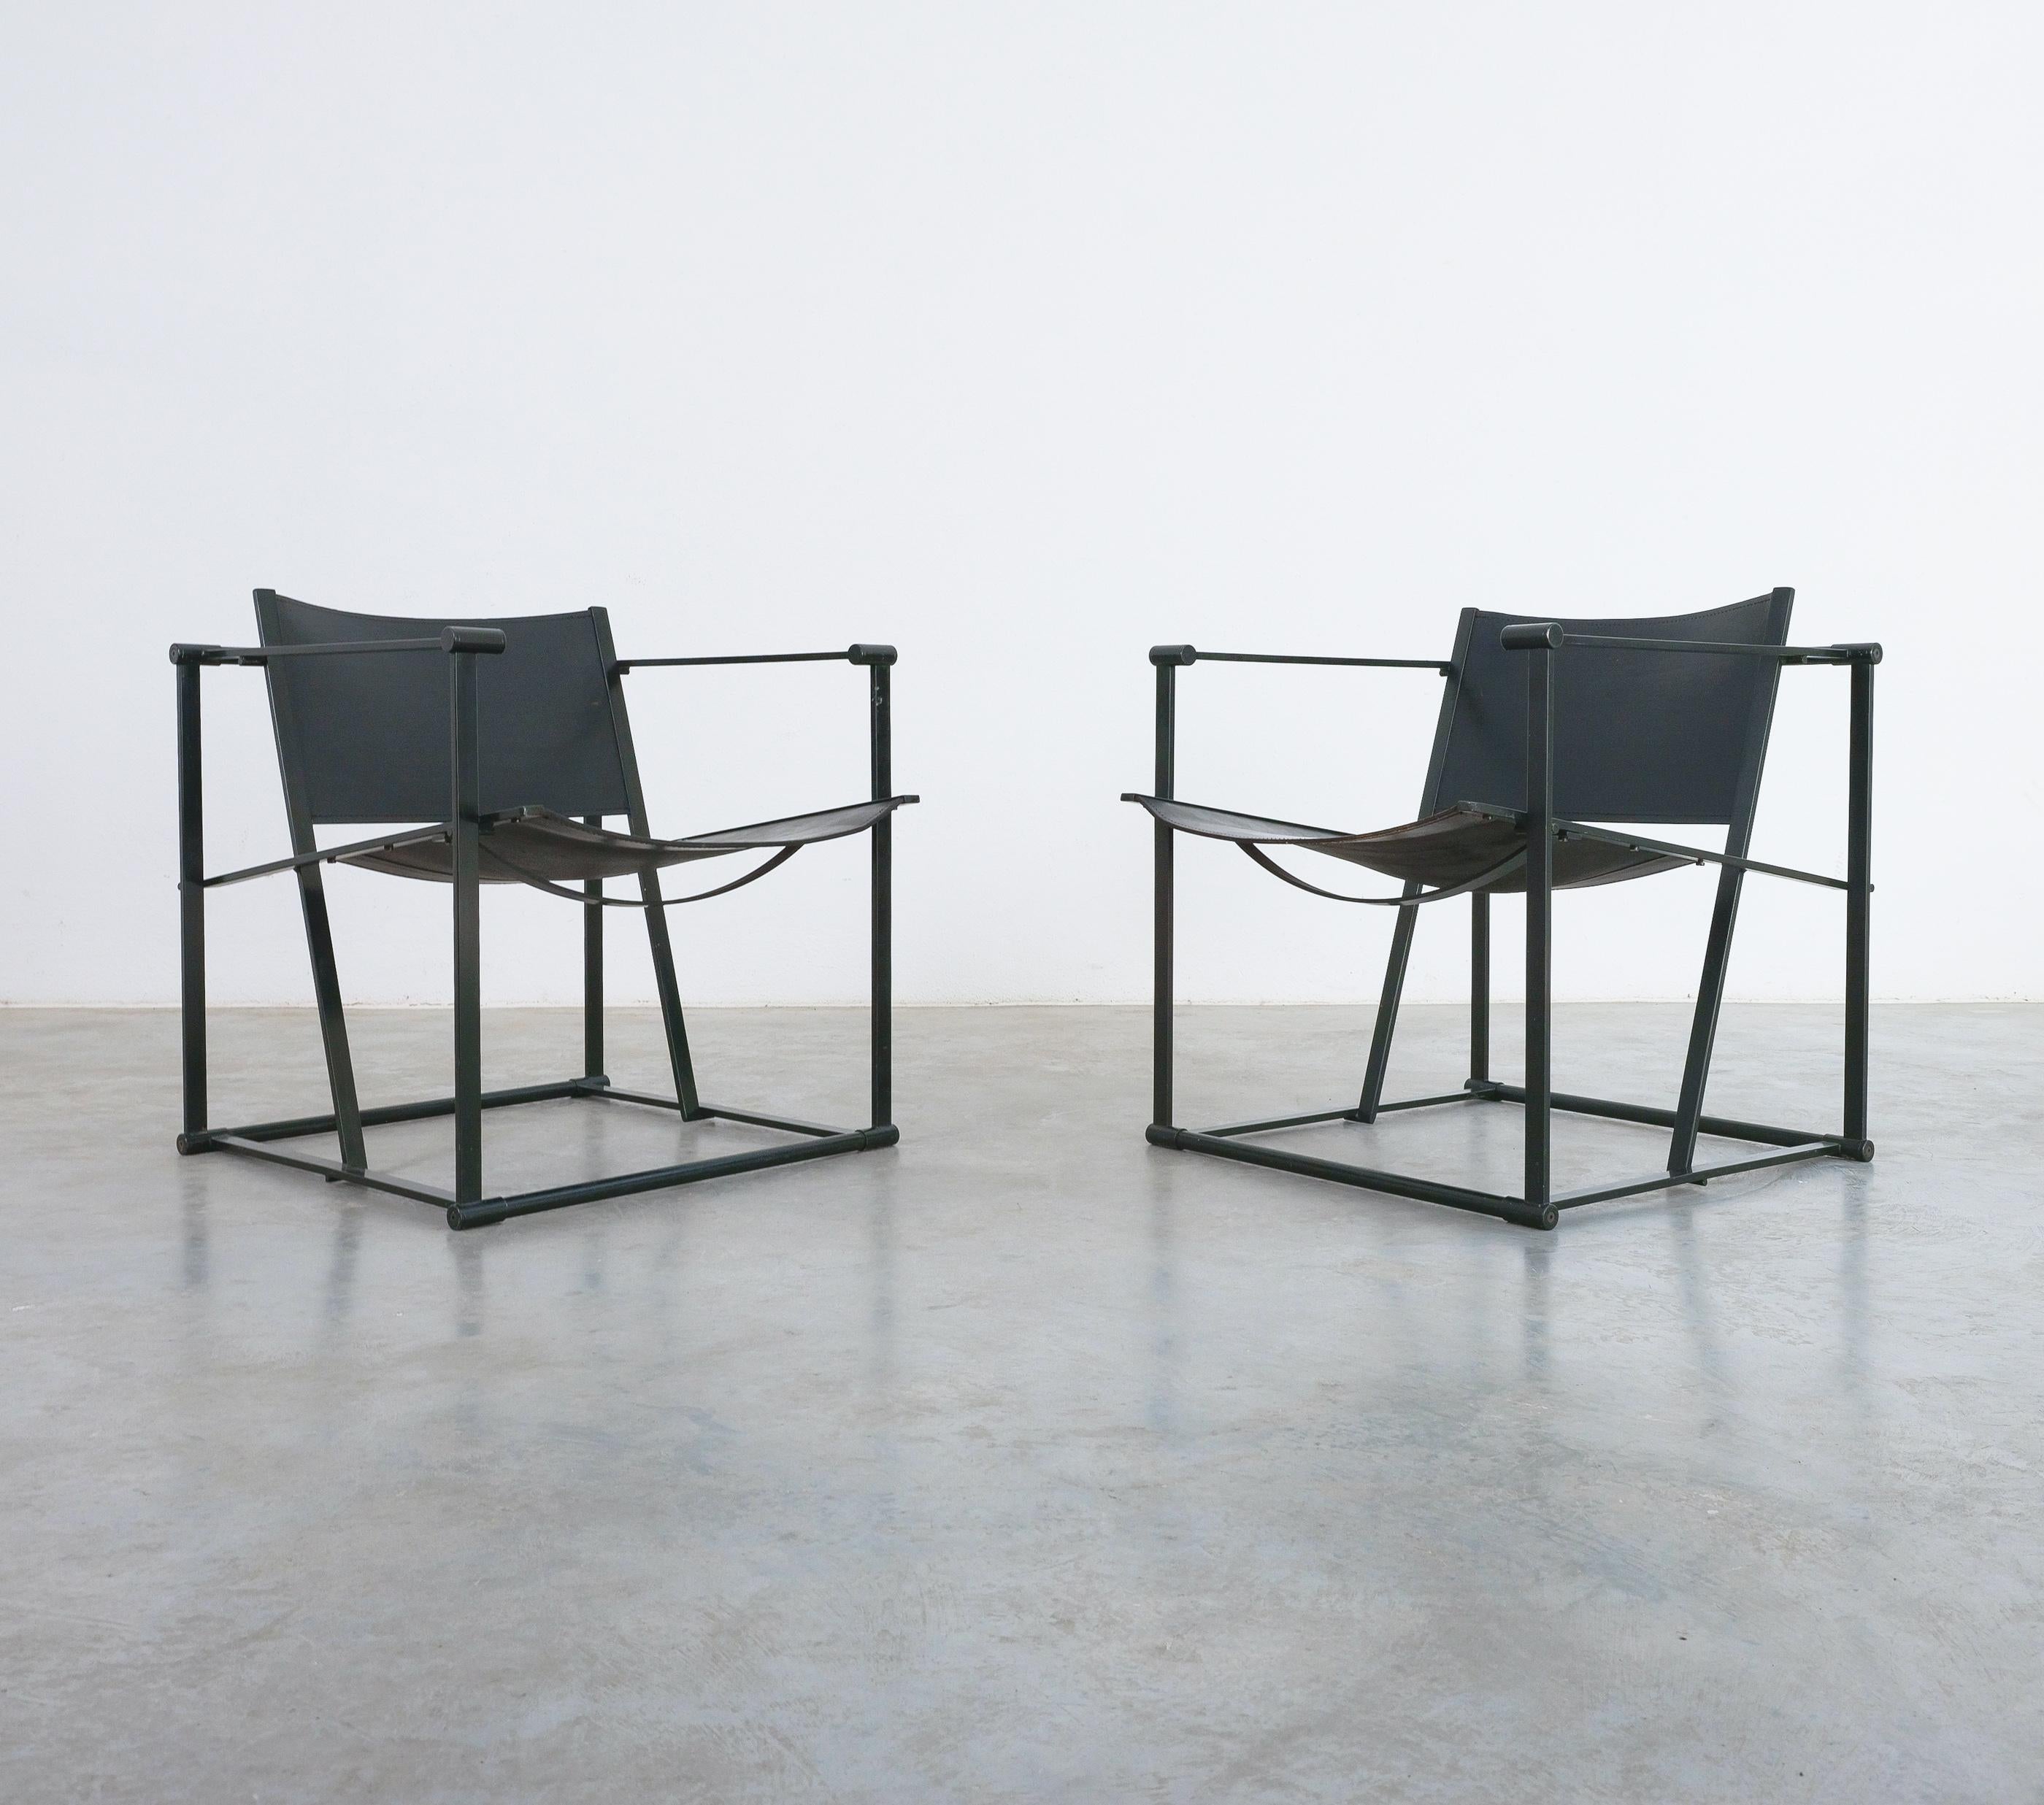 Fauteuil FM62 en cuir de Radboud Van Beekum pour Pastoe Post Modern, 1980

Chaises de salon néerlandaises minimalistes en cuir noir.
Conçues avec une précision géométrique, ces chaises présentent une silhouette intemporelle de cube ouvert avec une